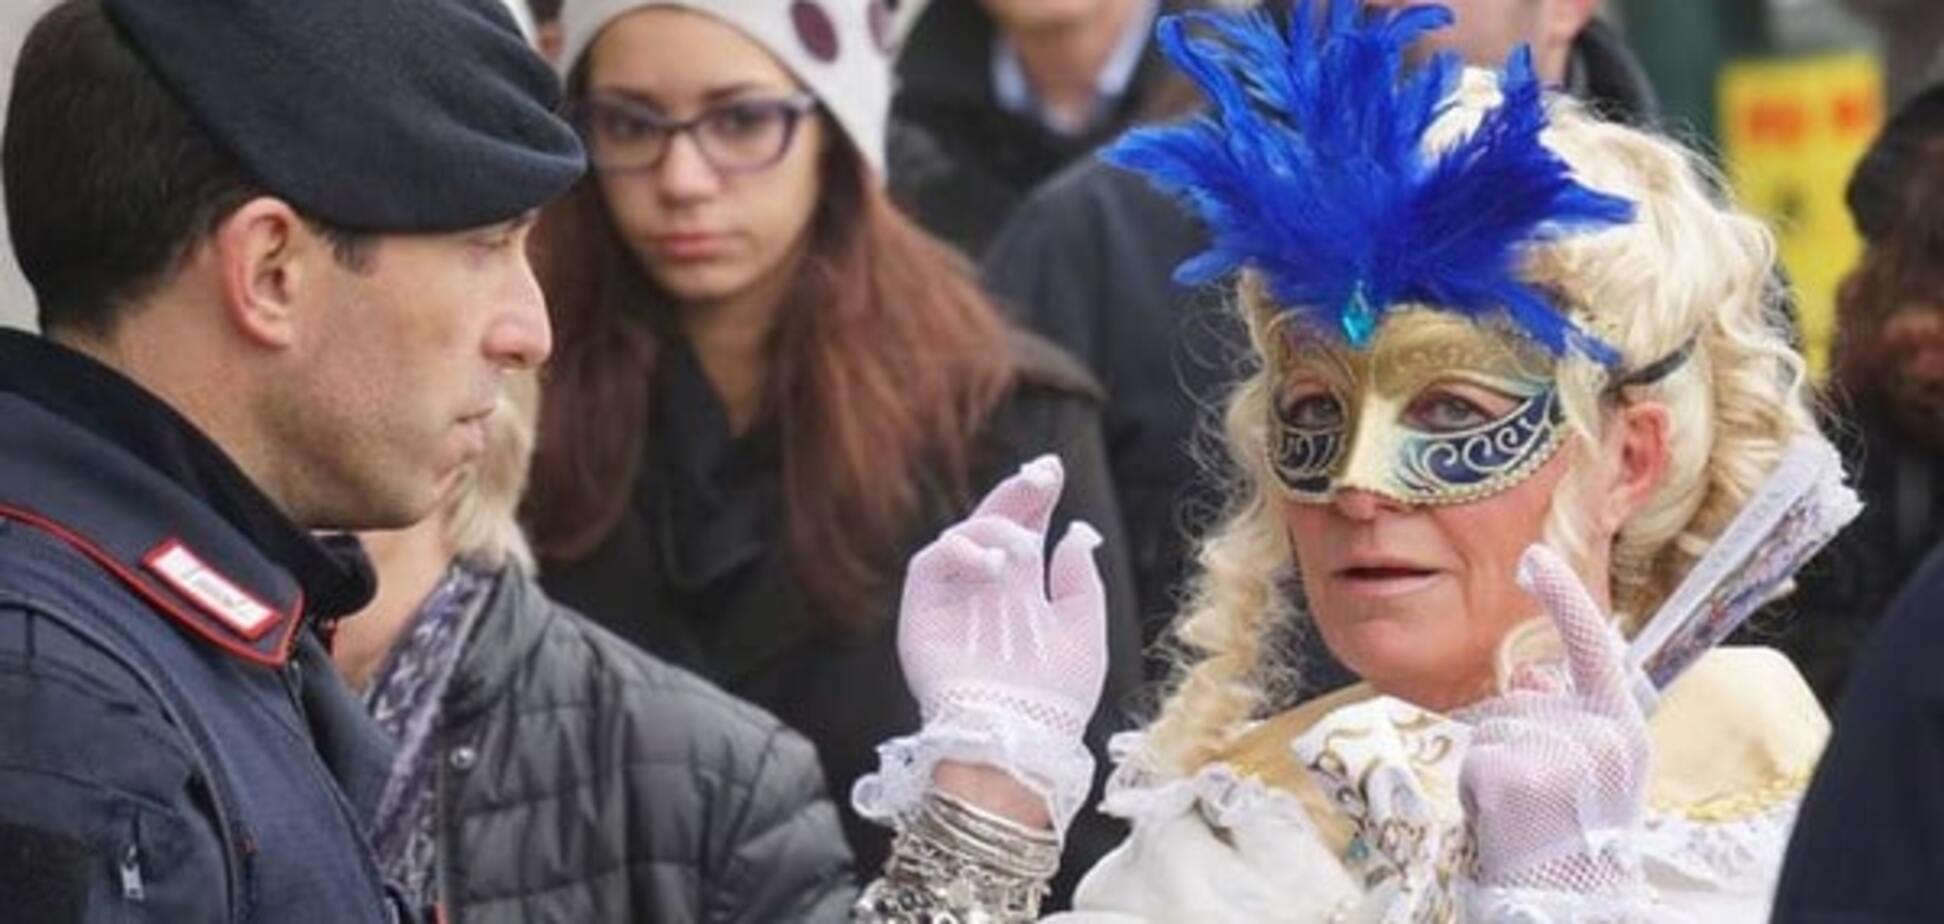 Суворі заходи: на карнавалі у Венеції поліція просила гостей знімати маски